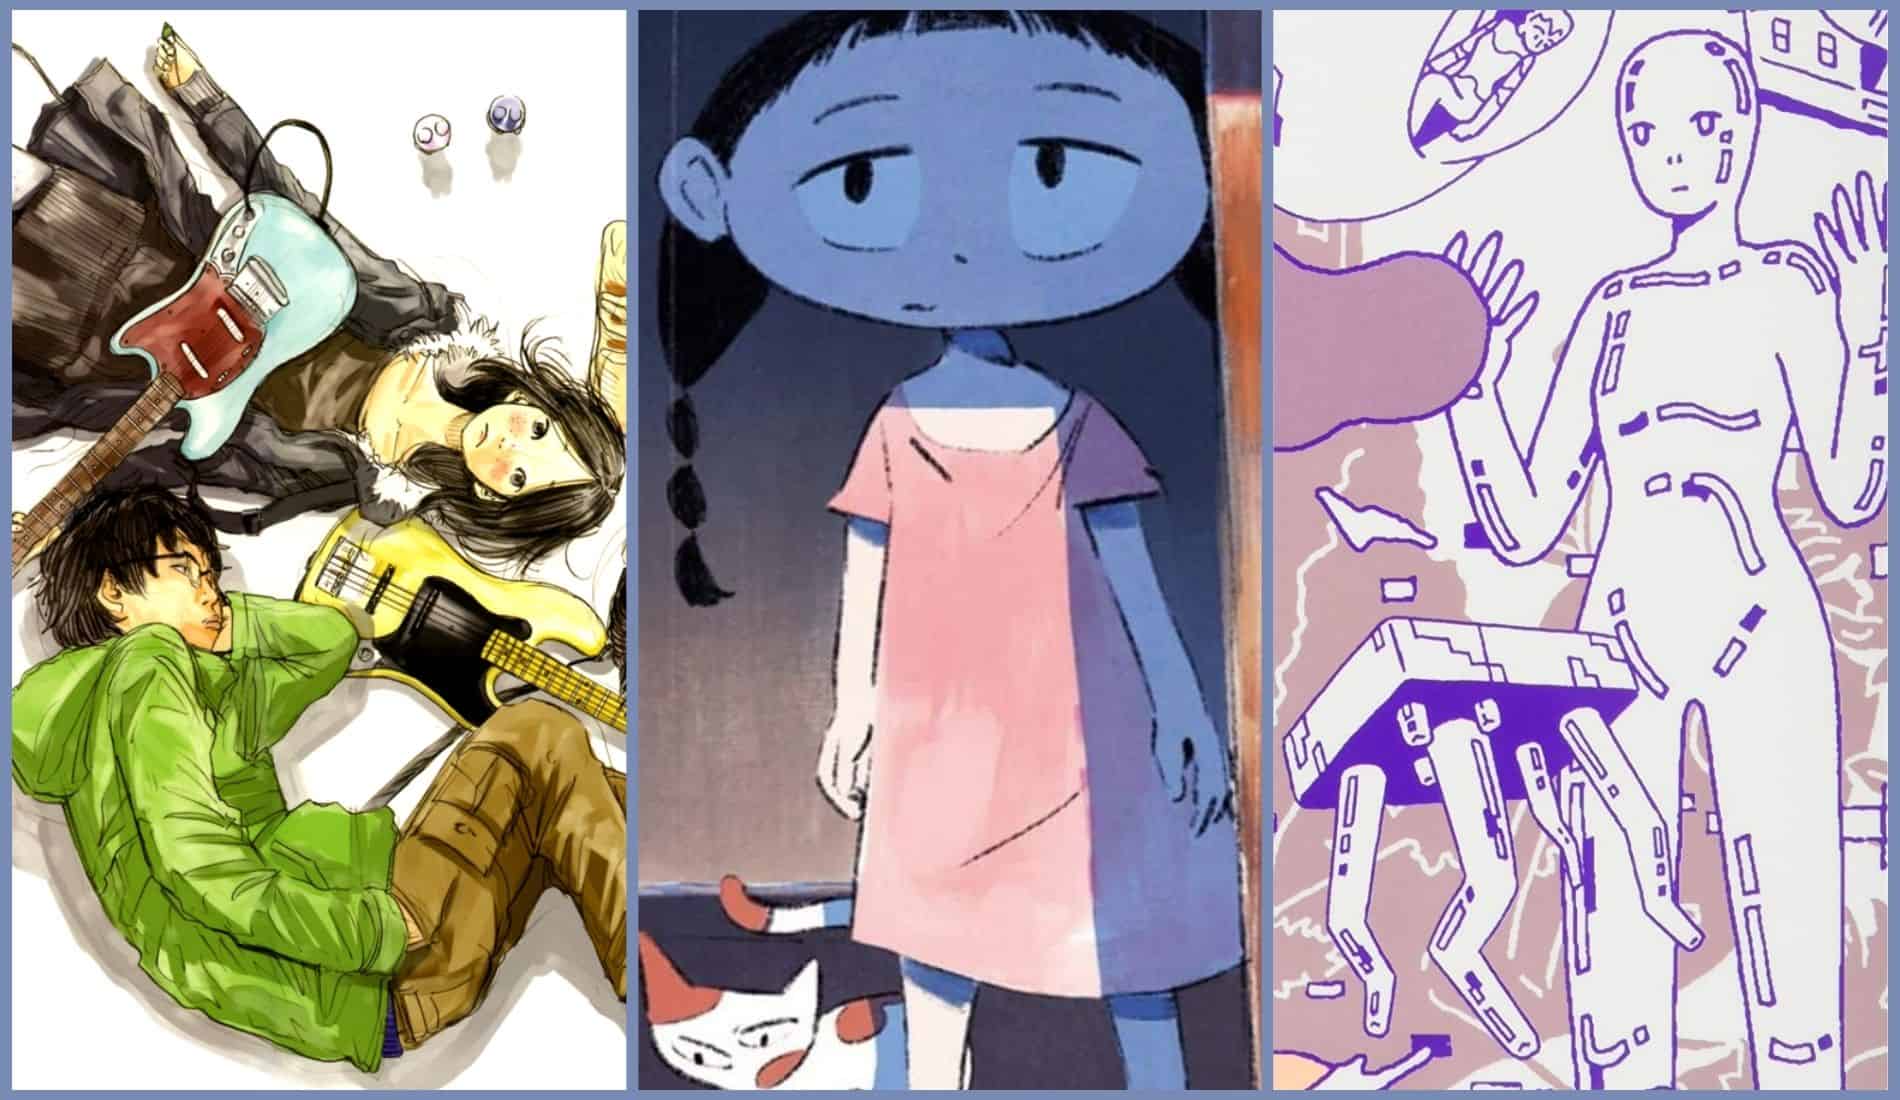 Best Comics, Graphic Novels, and Manga of 2013